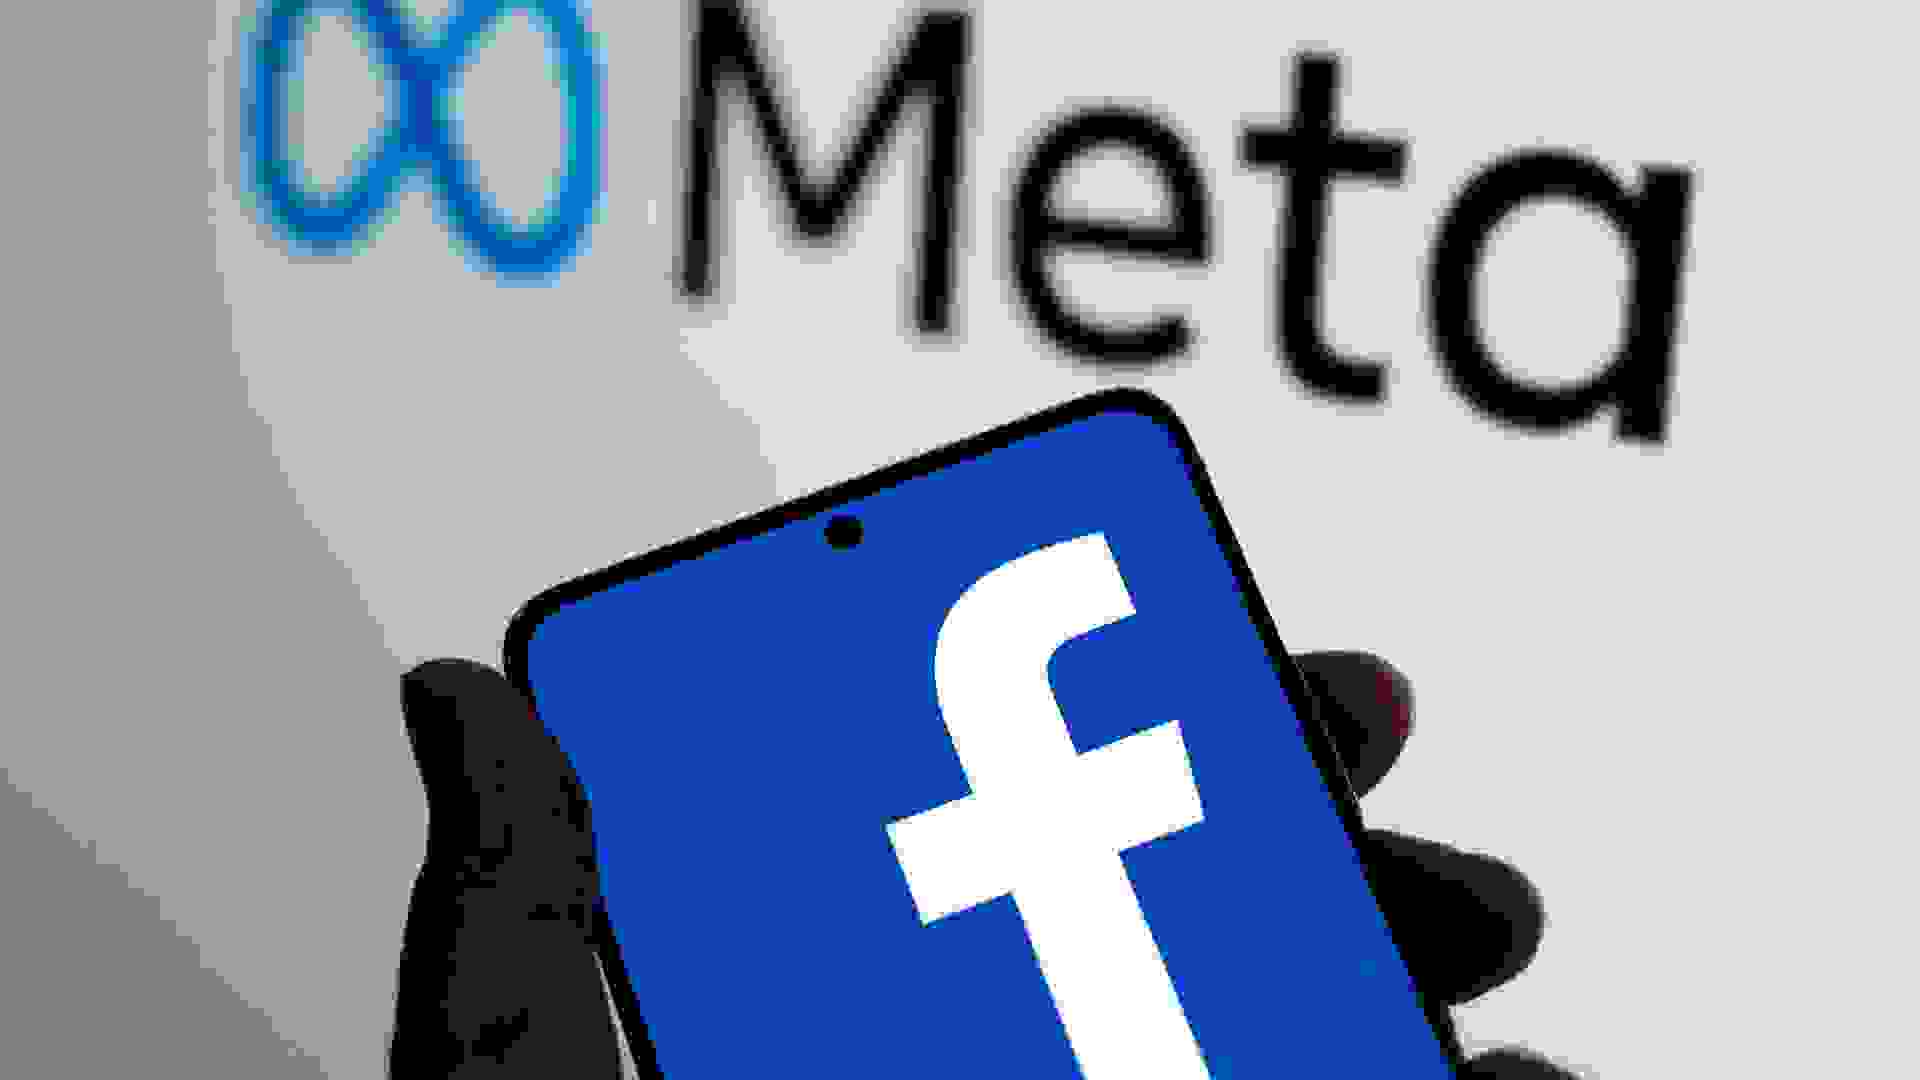 Bangkok, Thailand - October 29, 2021: Meta logo is shown on a device screen.